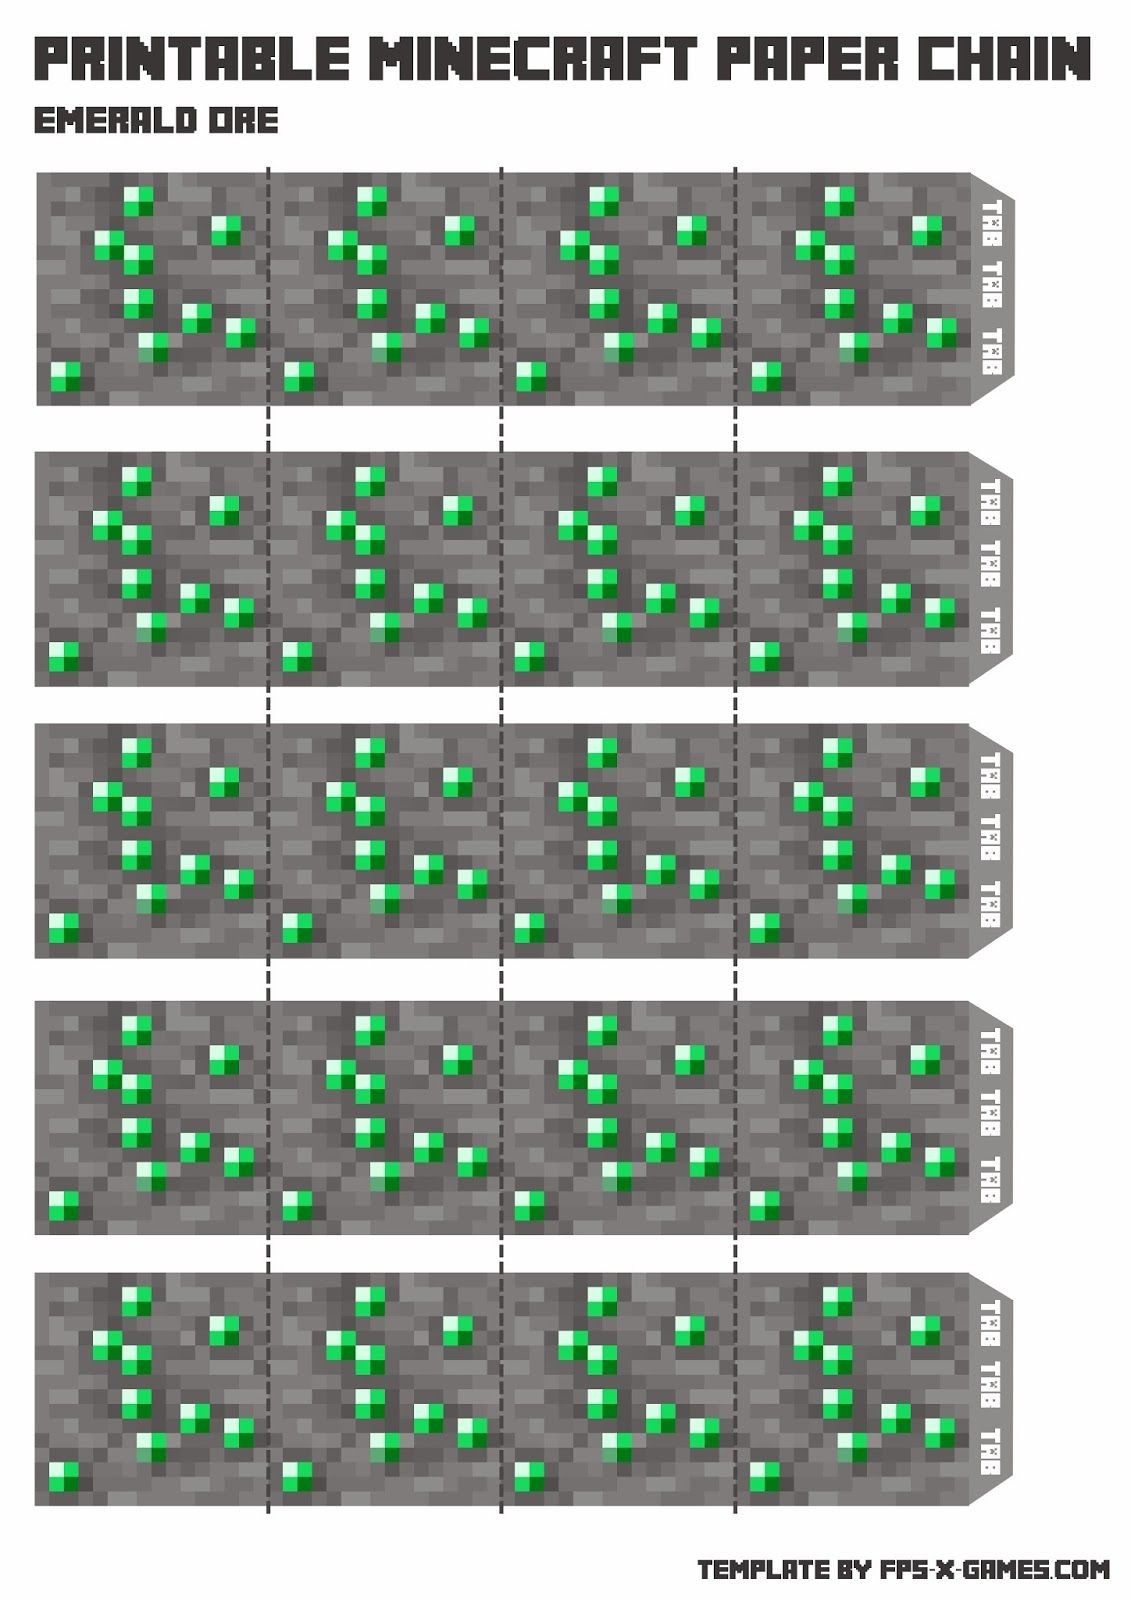 Minecraft Papercraft Minecraft Papercraft Chain Emerald ore